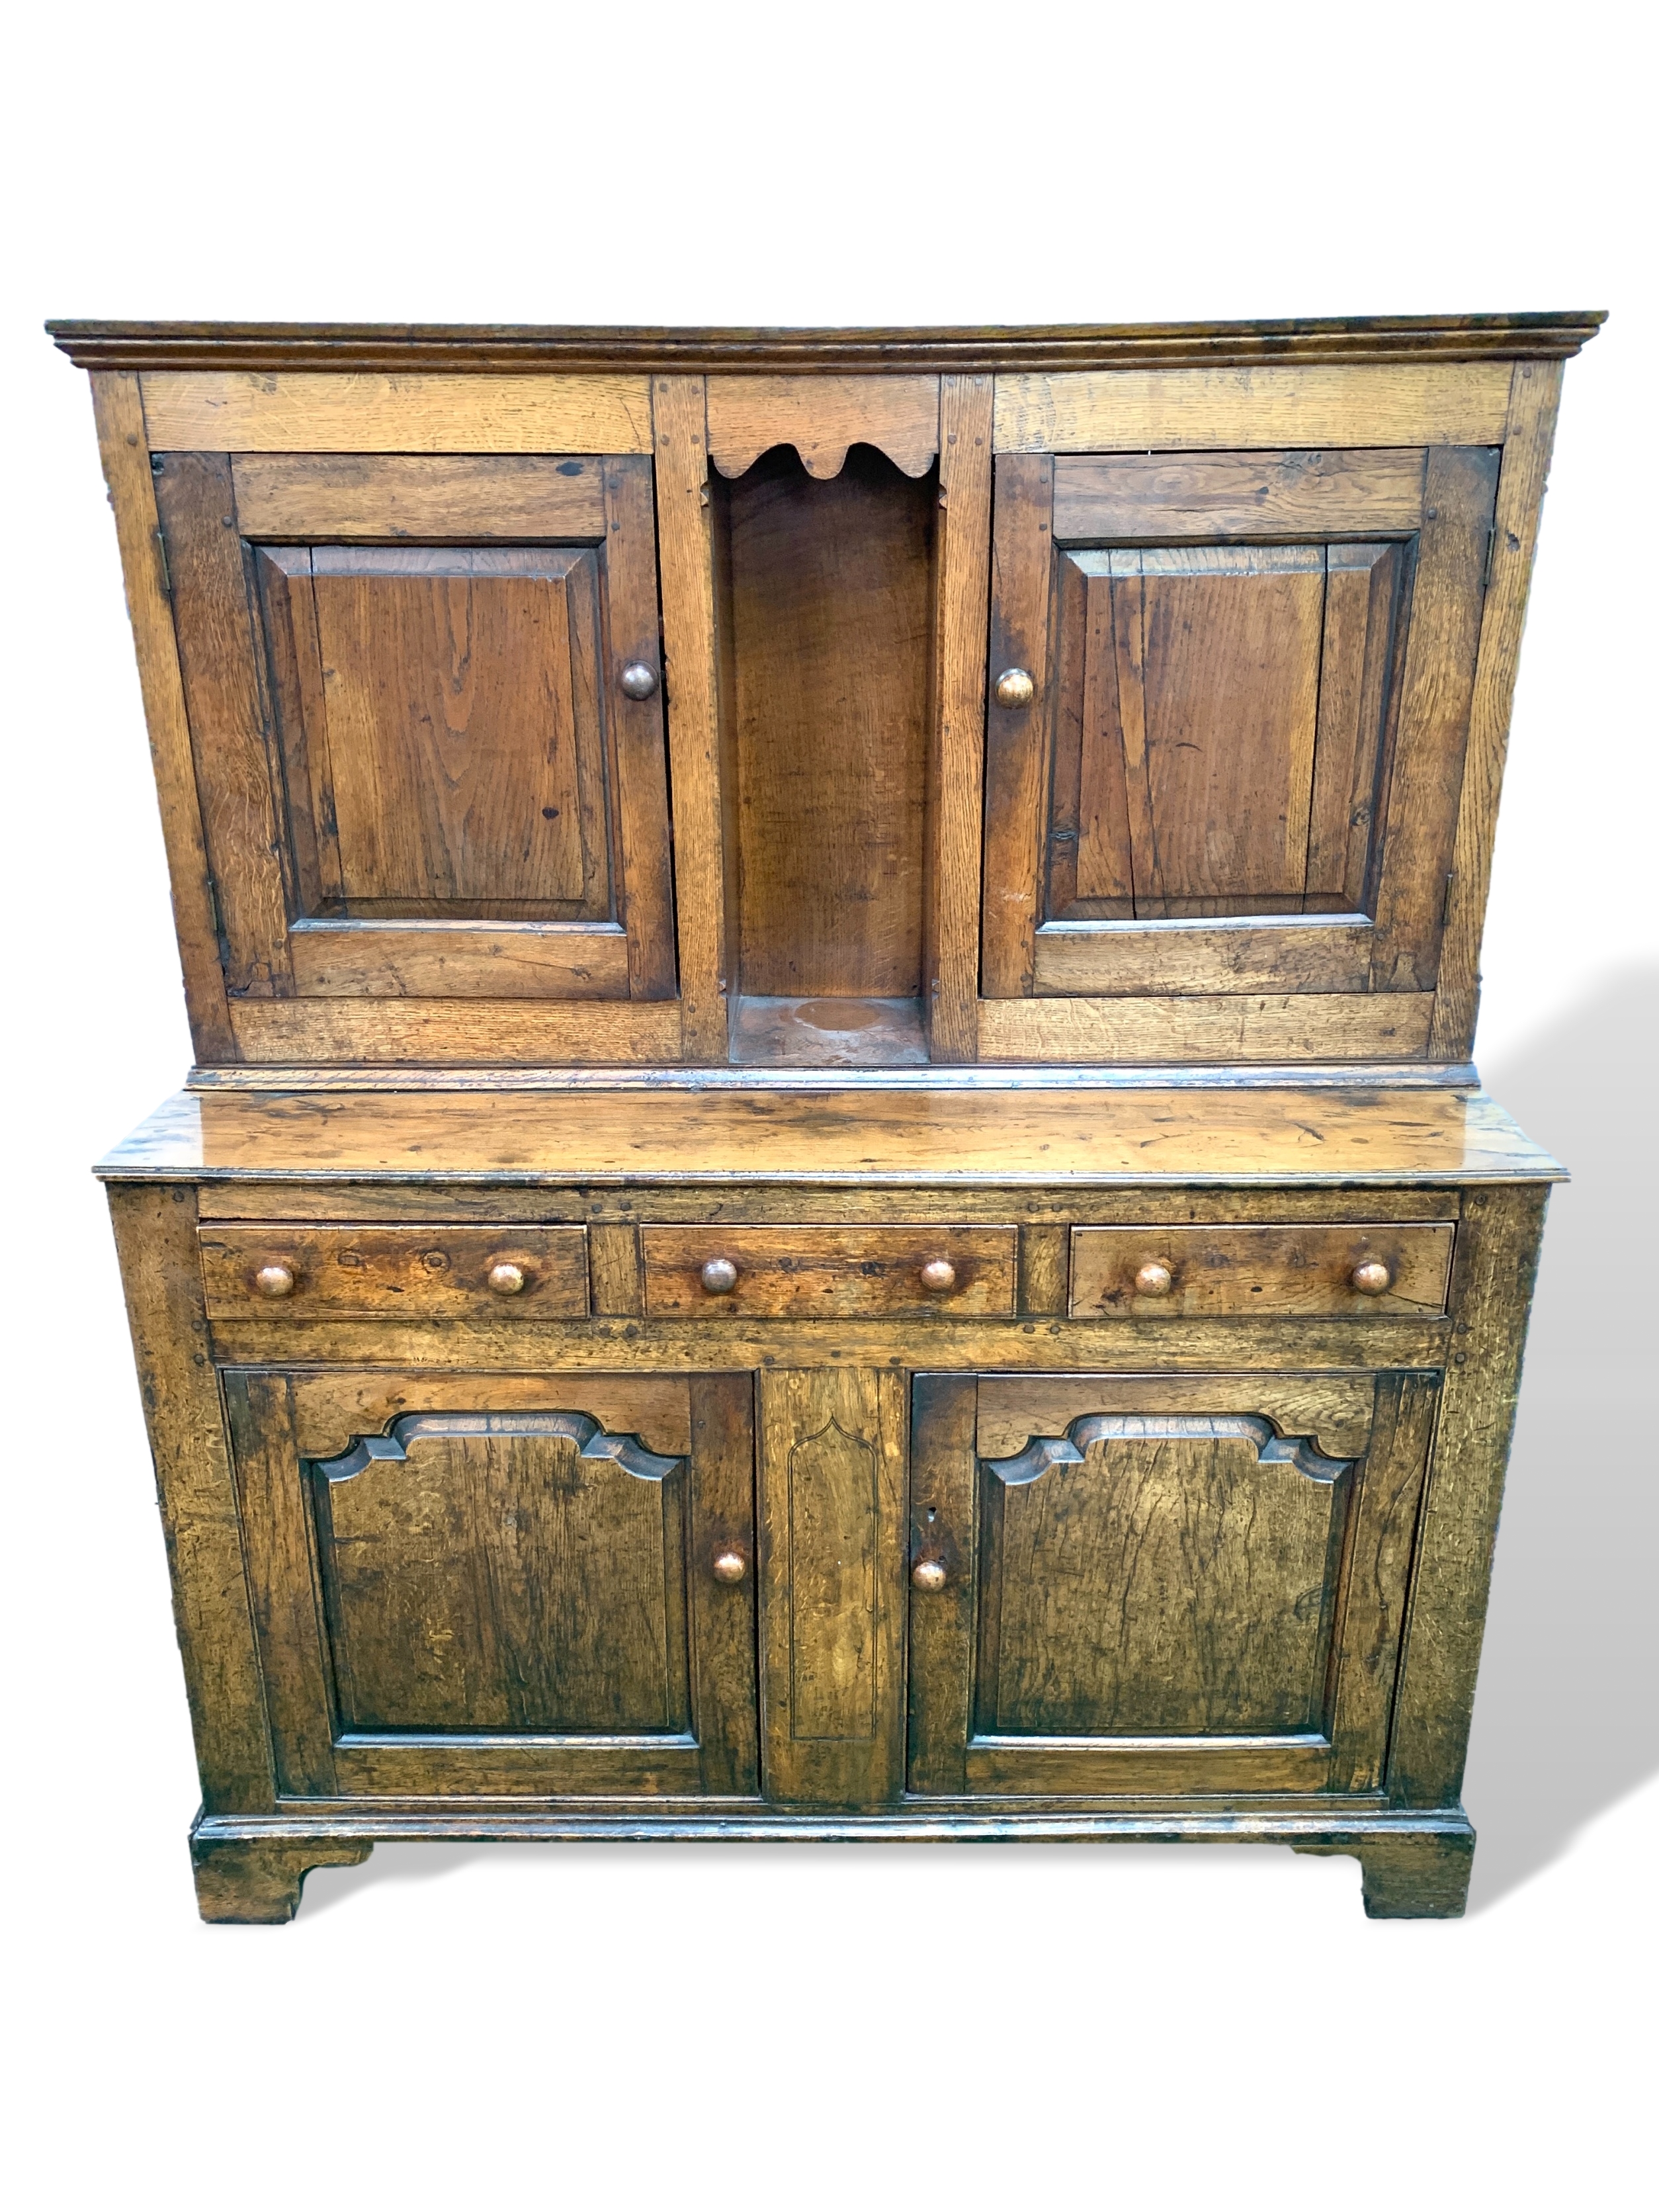 Early 19th century oak court cupboard